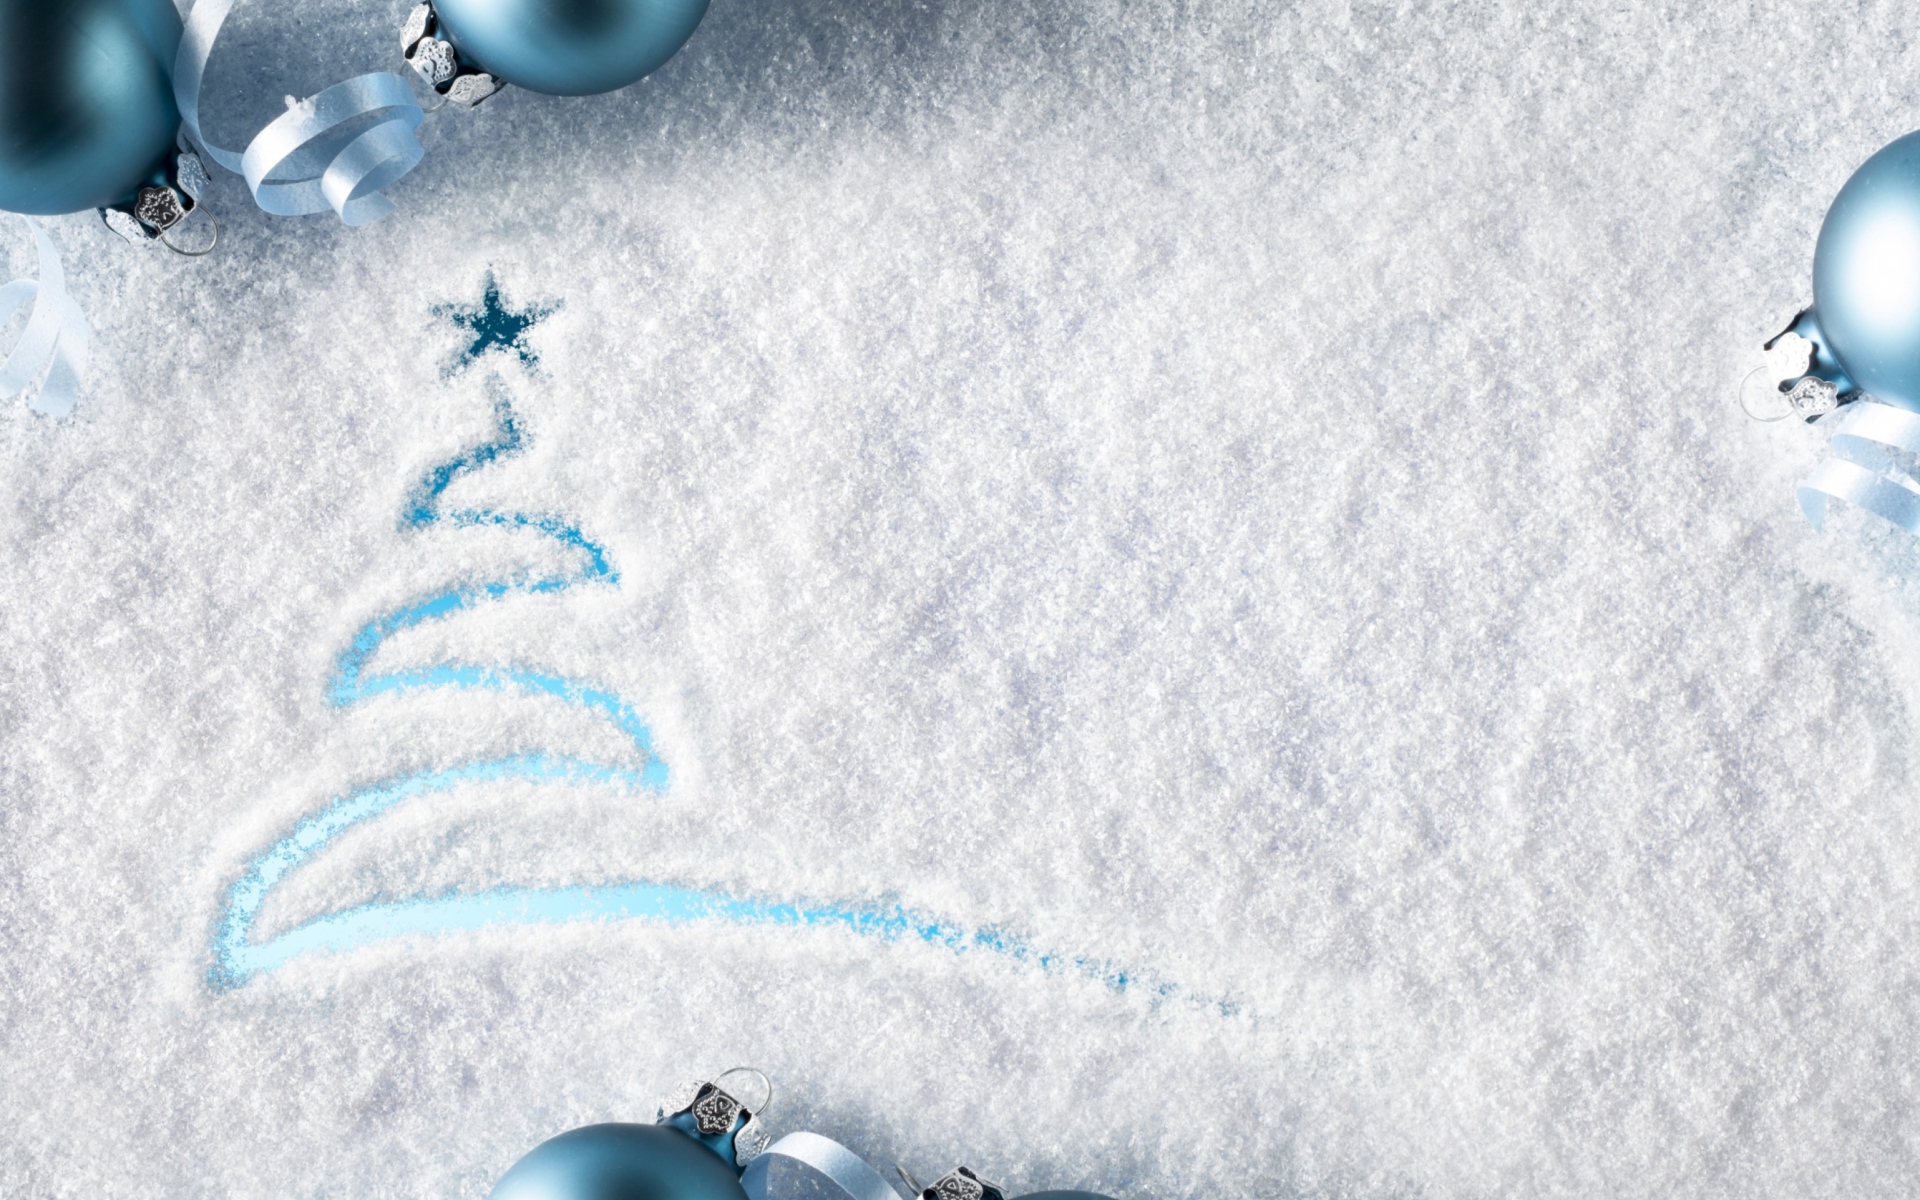 Das Snowy Christmas Tree Wallpaper 1920x1200